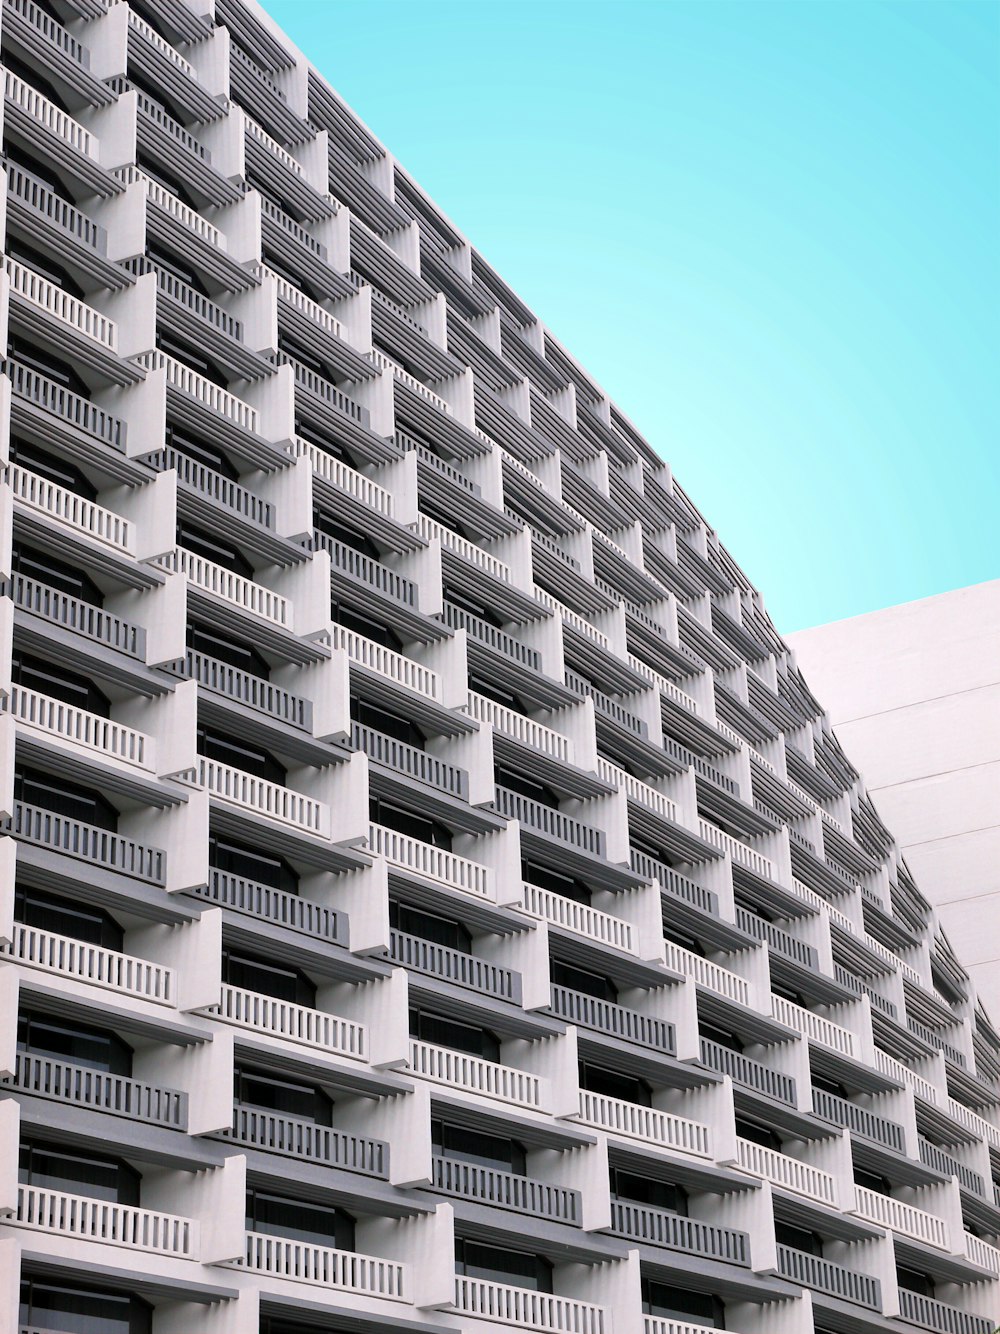 edifício de concreto branco com terraços